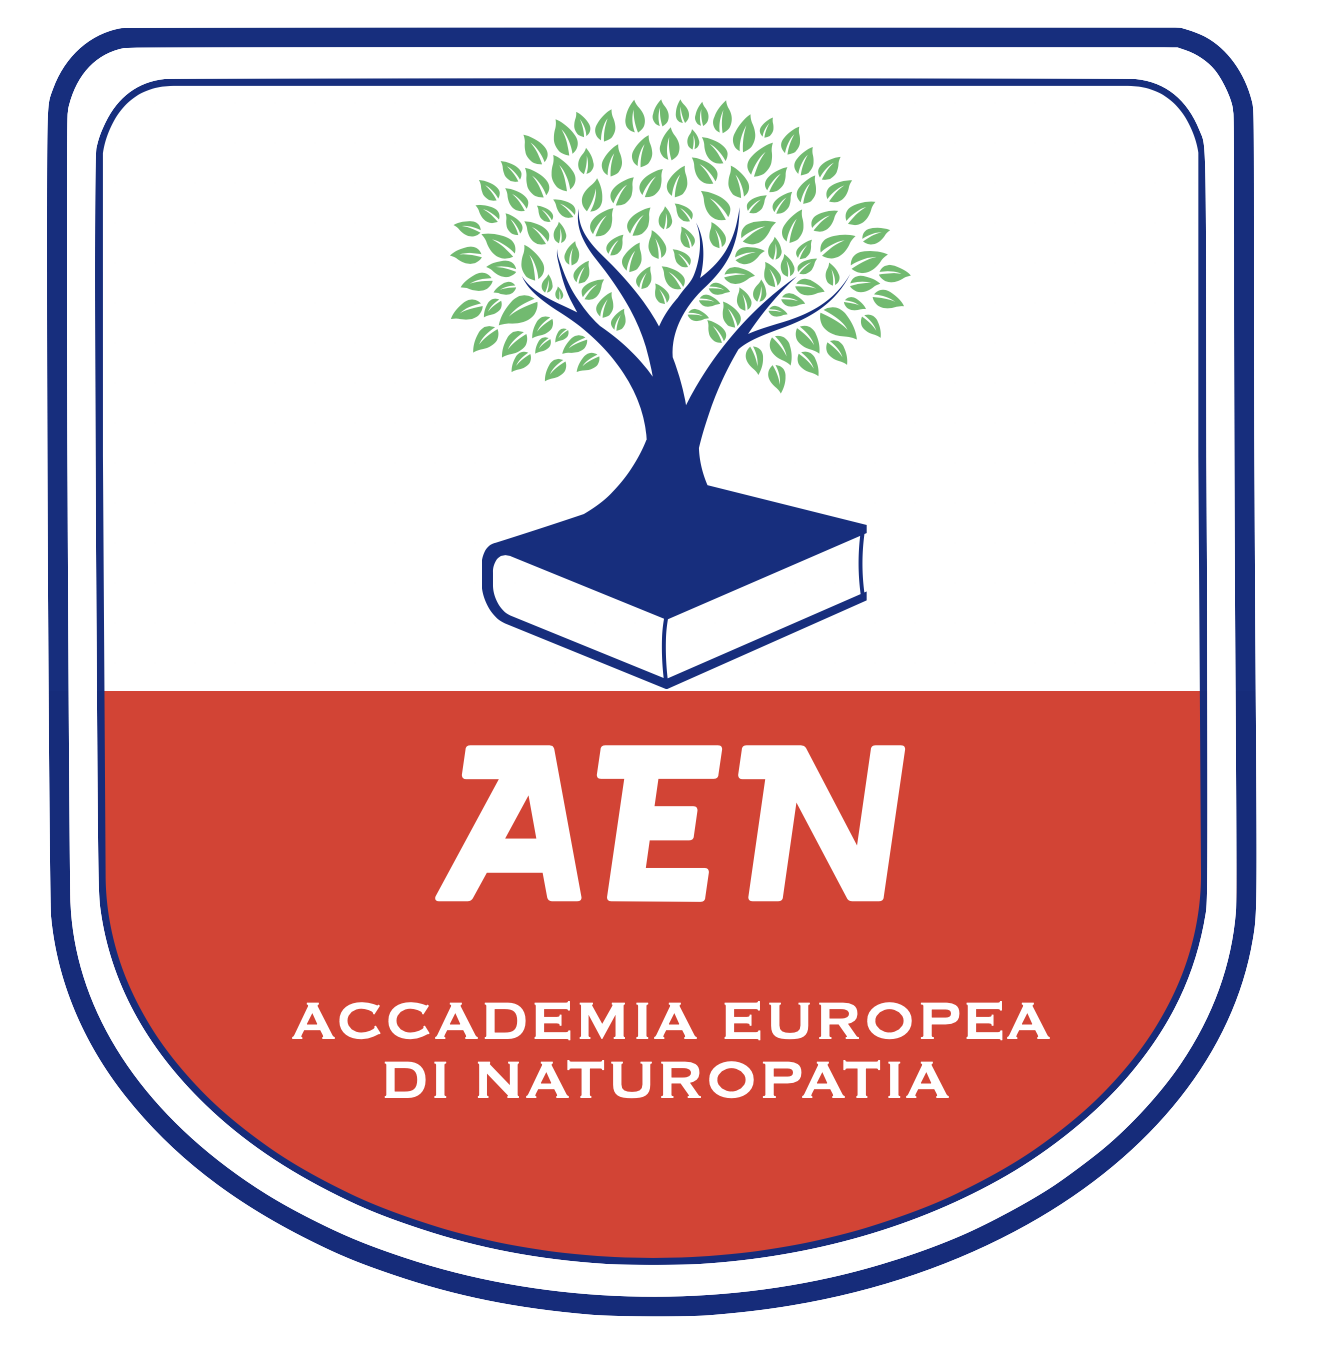 Accademia Europea di Naturopatia